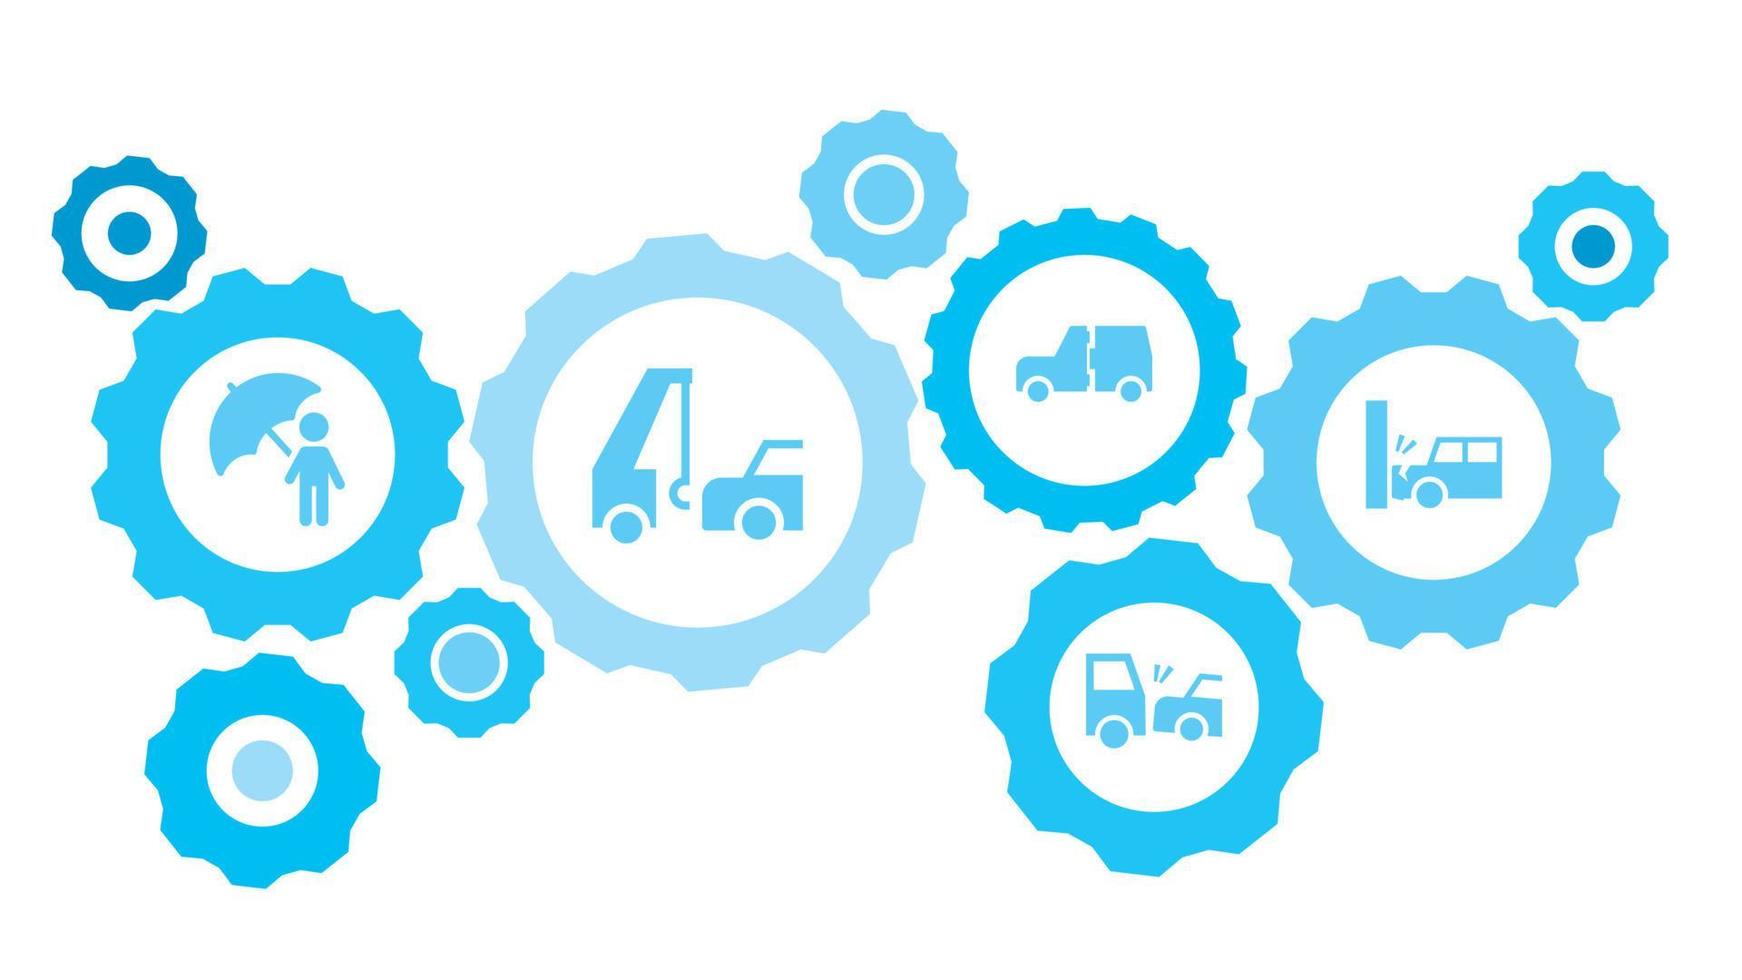 ansluten kugghjul och ikoner för logistik, service, frakt, distribution, transport, marknadsföra, kommunicera begrepp. bil, bil, kollision, träffa redskap blå ikon uppsättning på vit bakgrund vektor